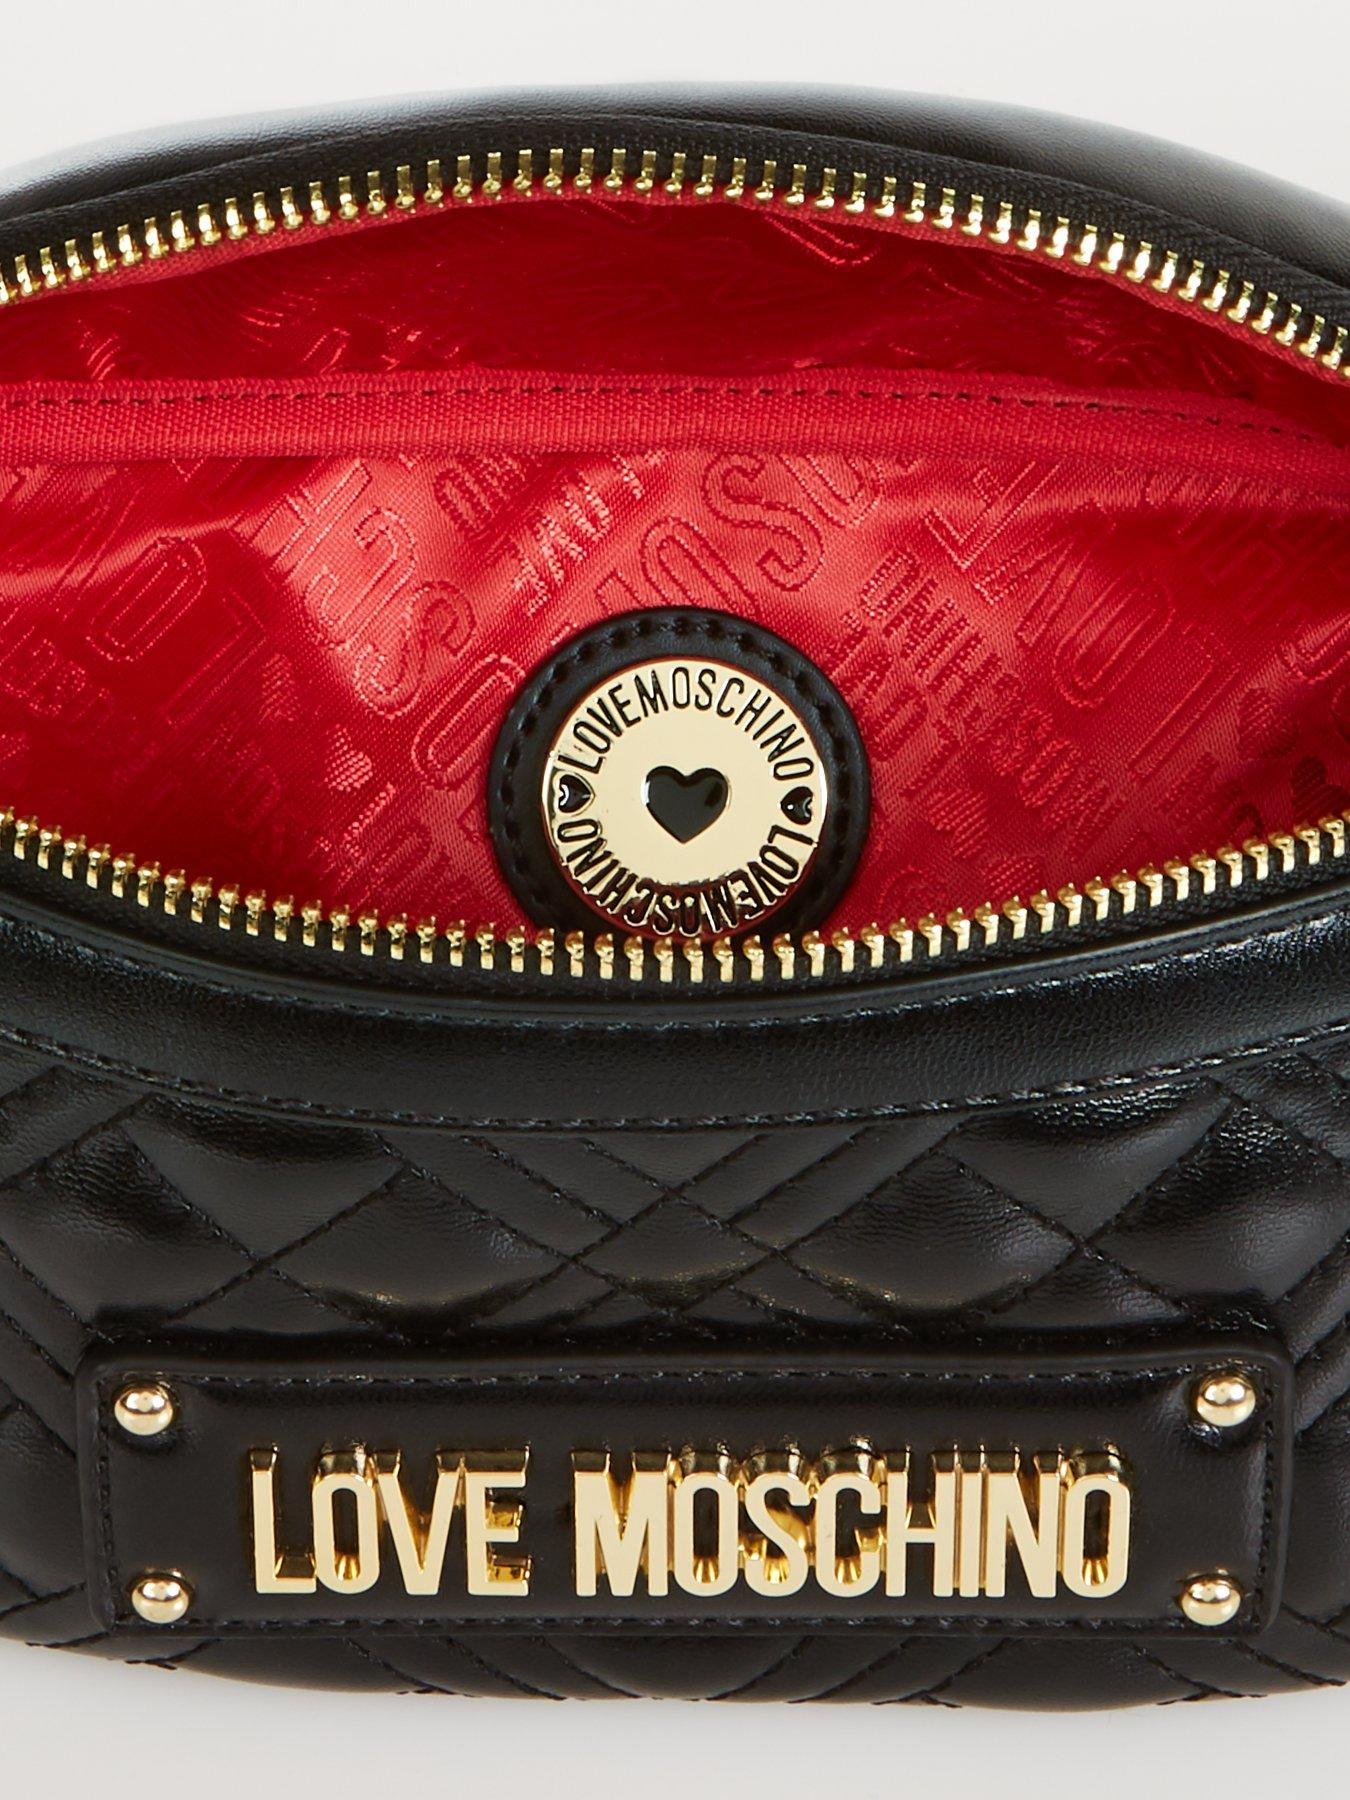 love moschino bags uk